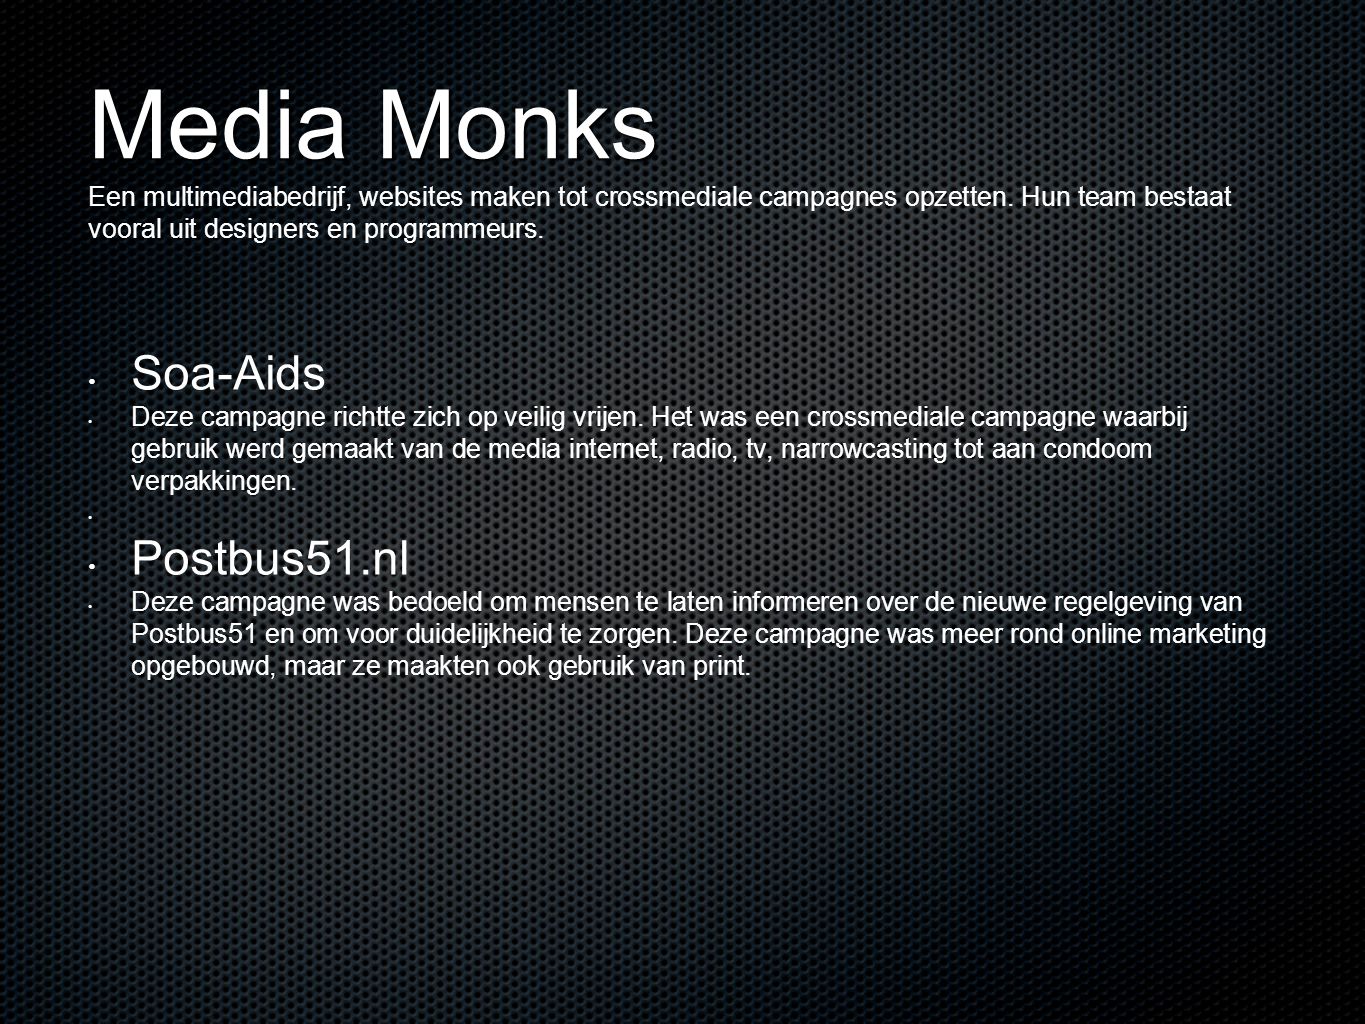 Media Monks Een multimediabedrijf, websites maken tot crossmediale campagnes opzetten. Hun team bestaat vooral uit designers en programmeurs.